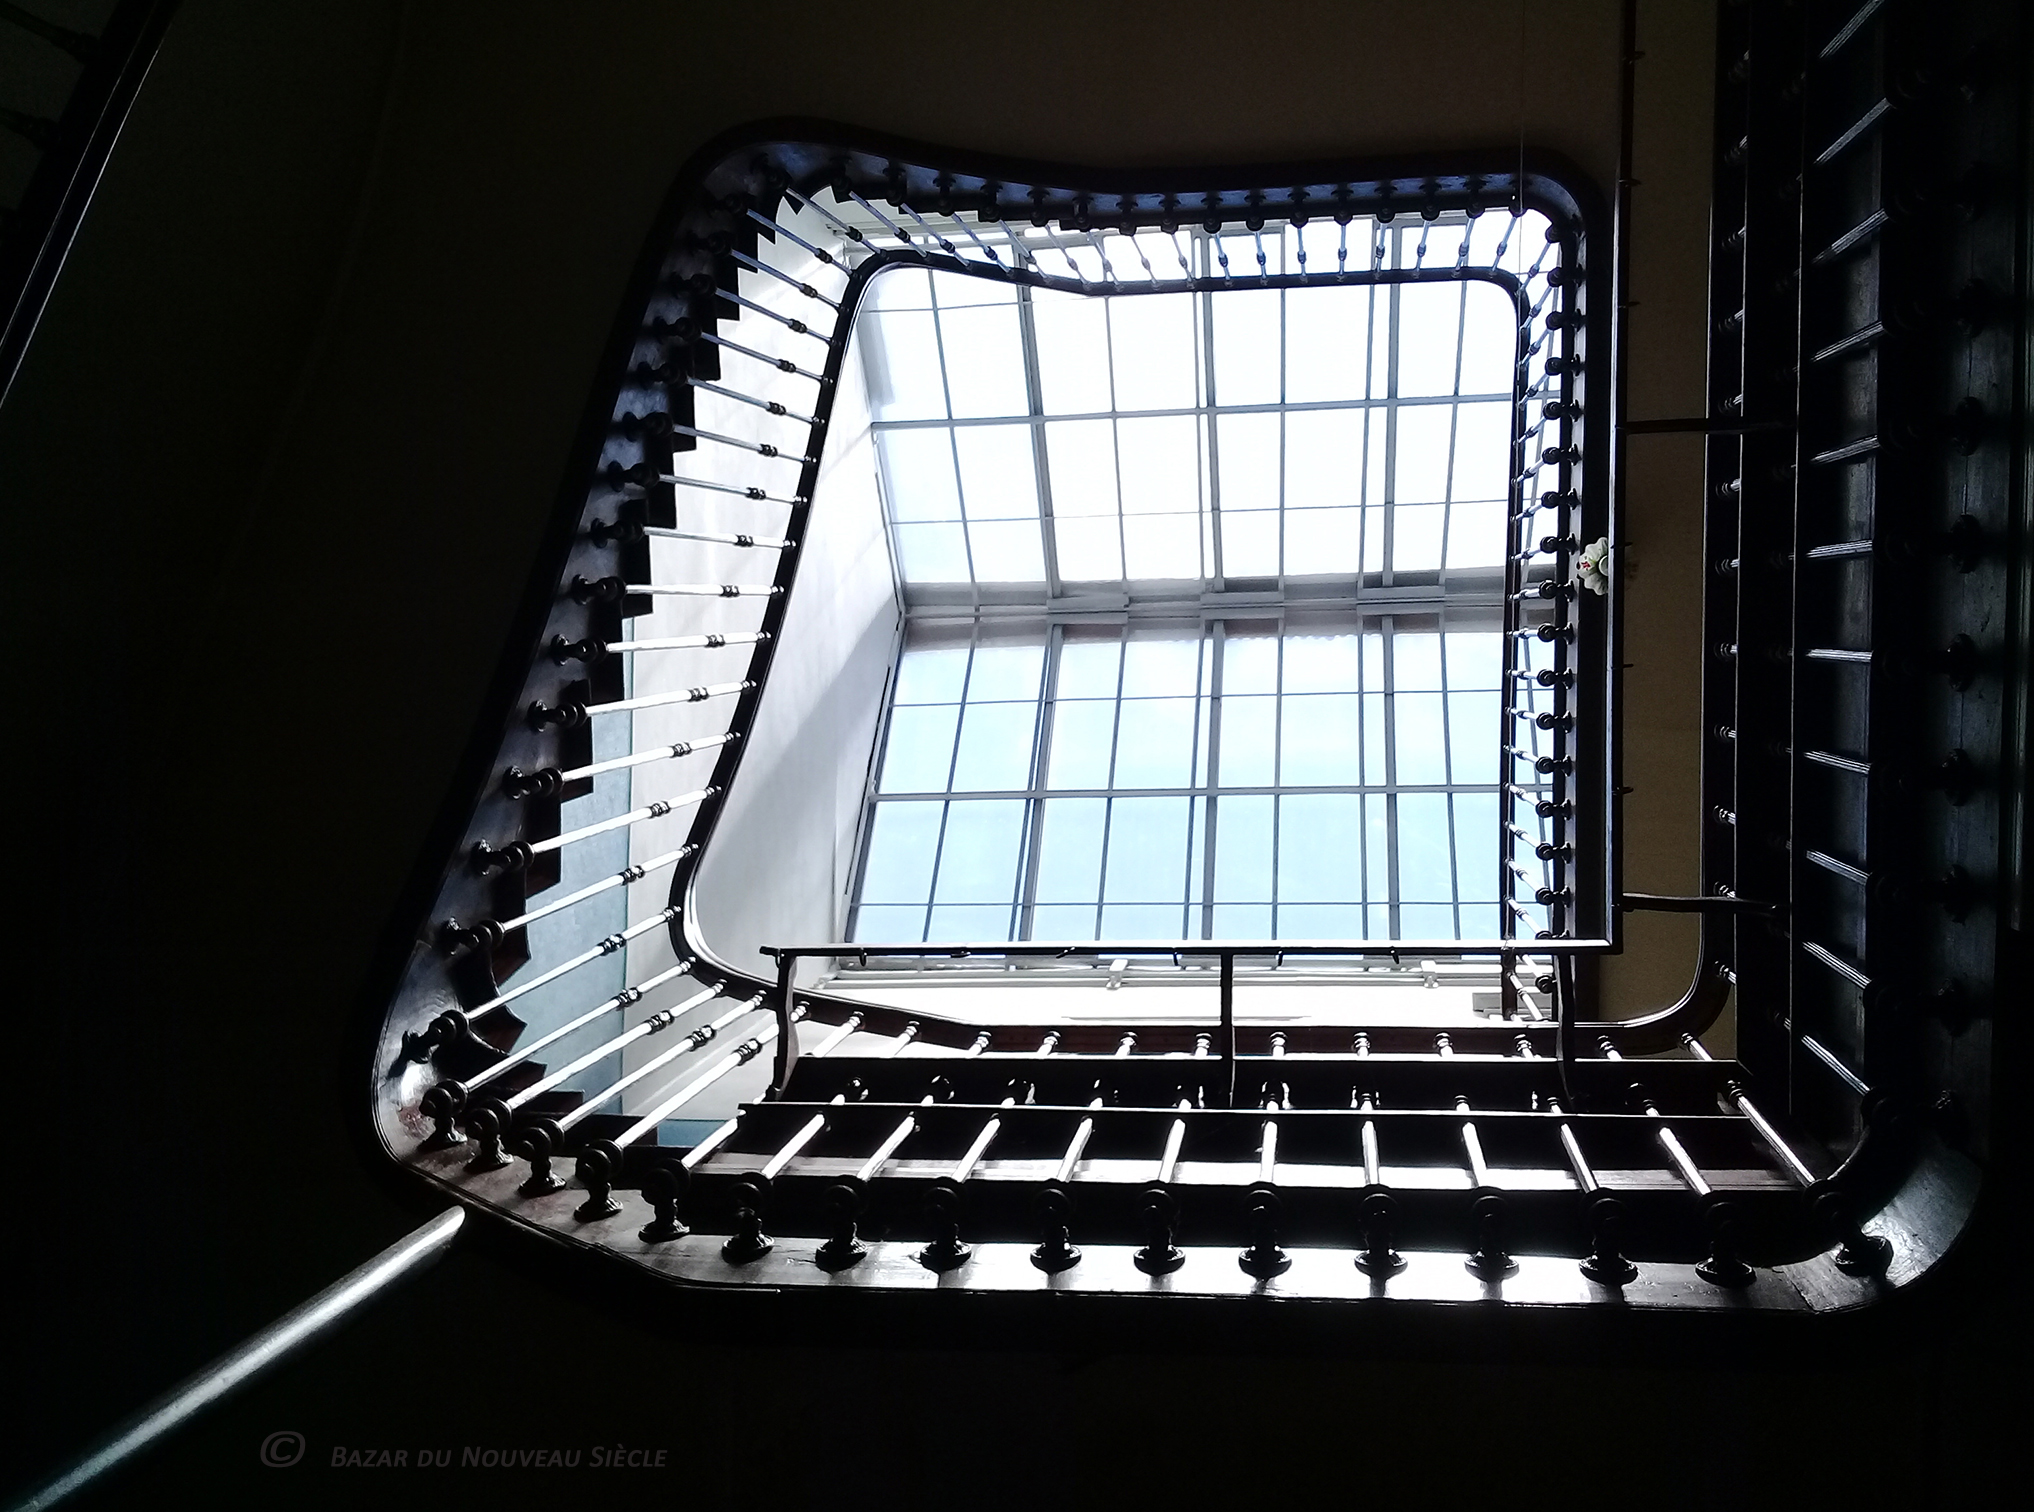 Chambres d'hôtes - Bazar du nouveau siècle - Montréjeau Escalier A (©) 